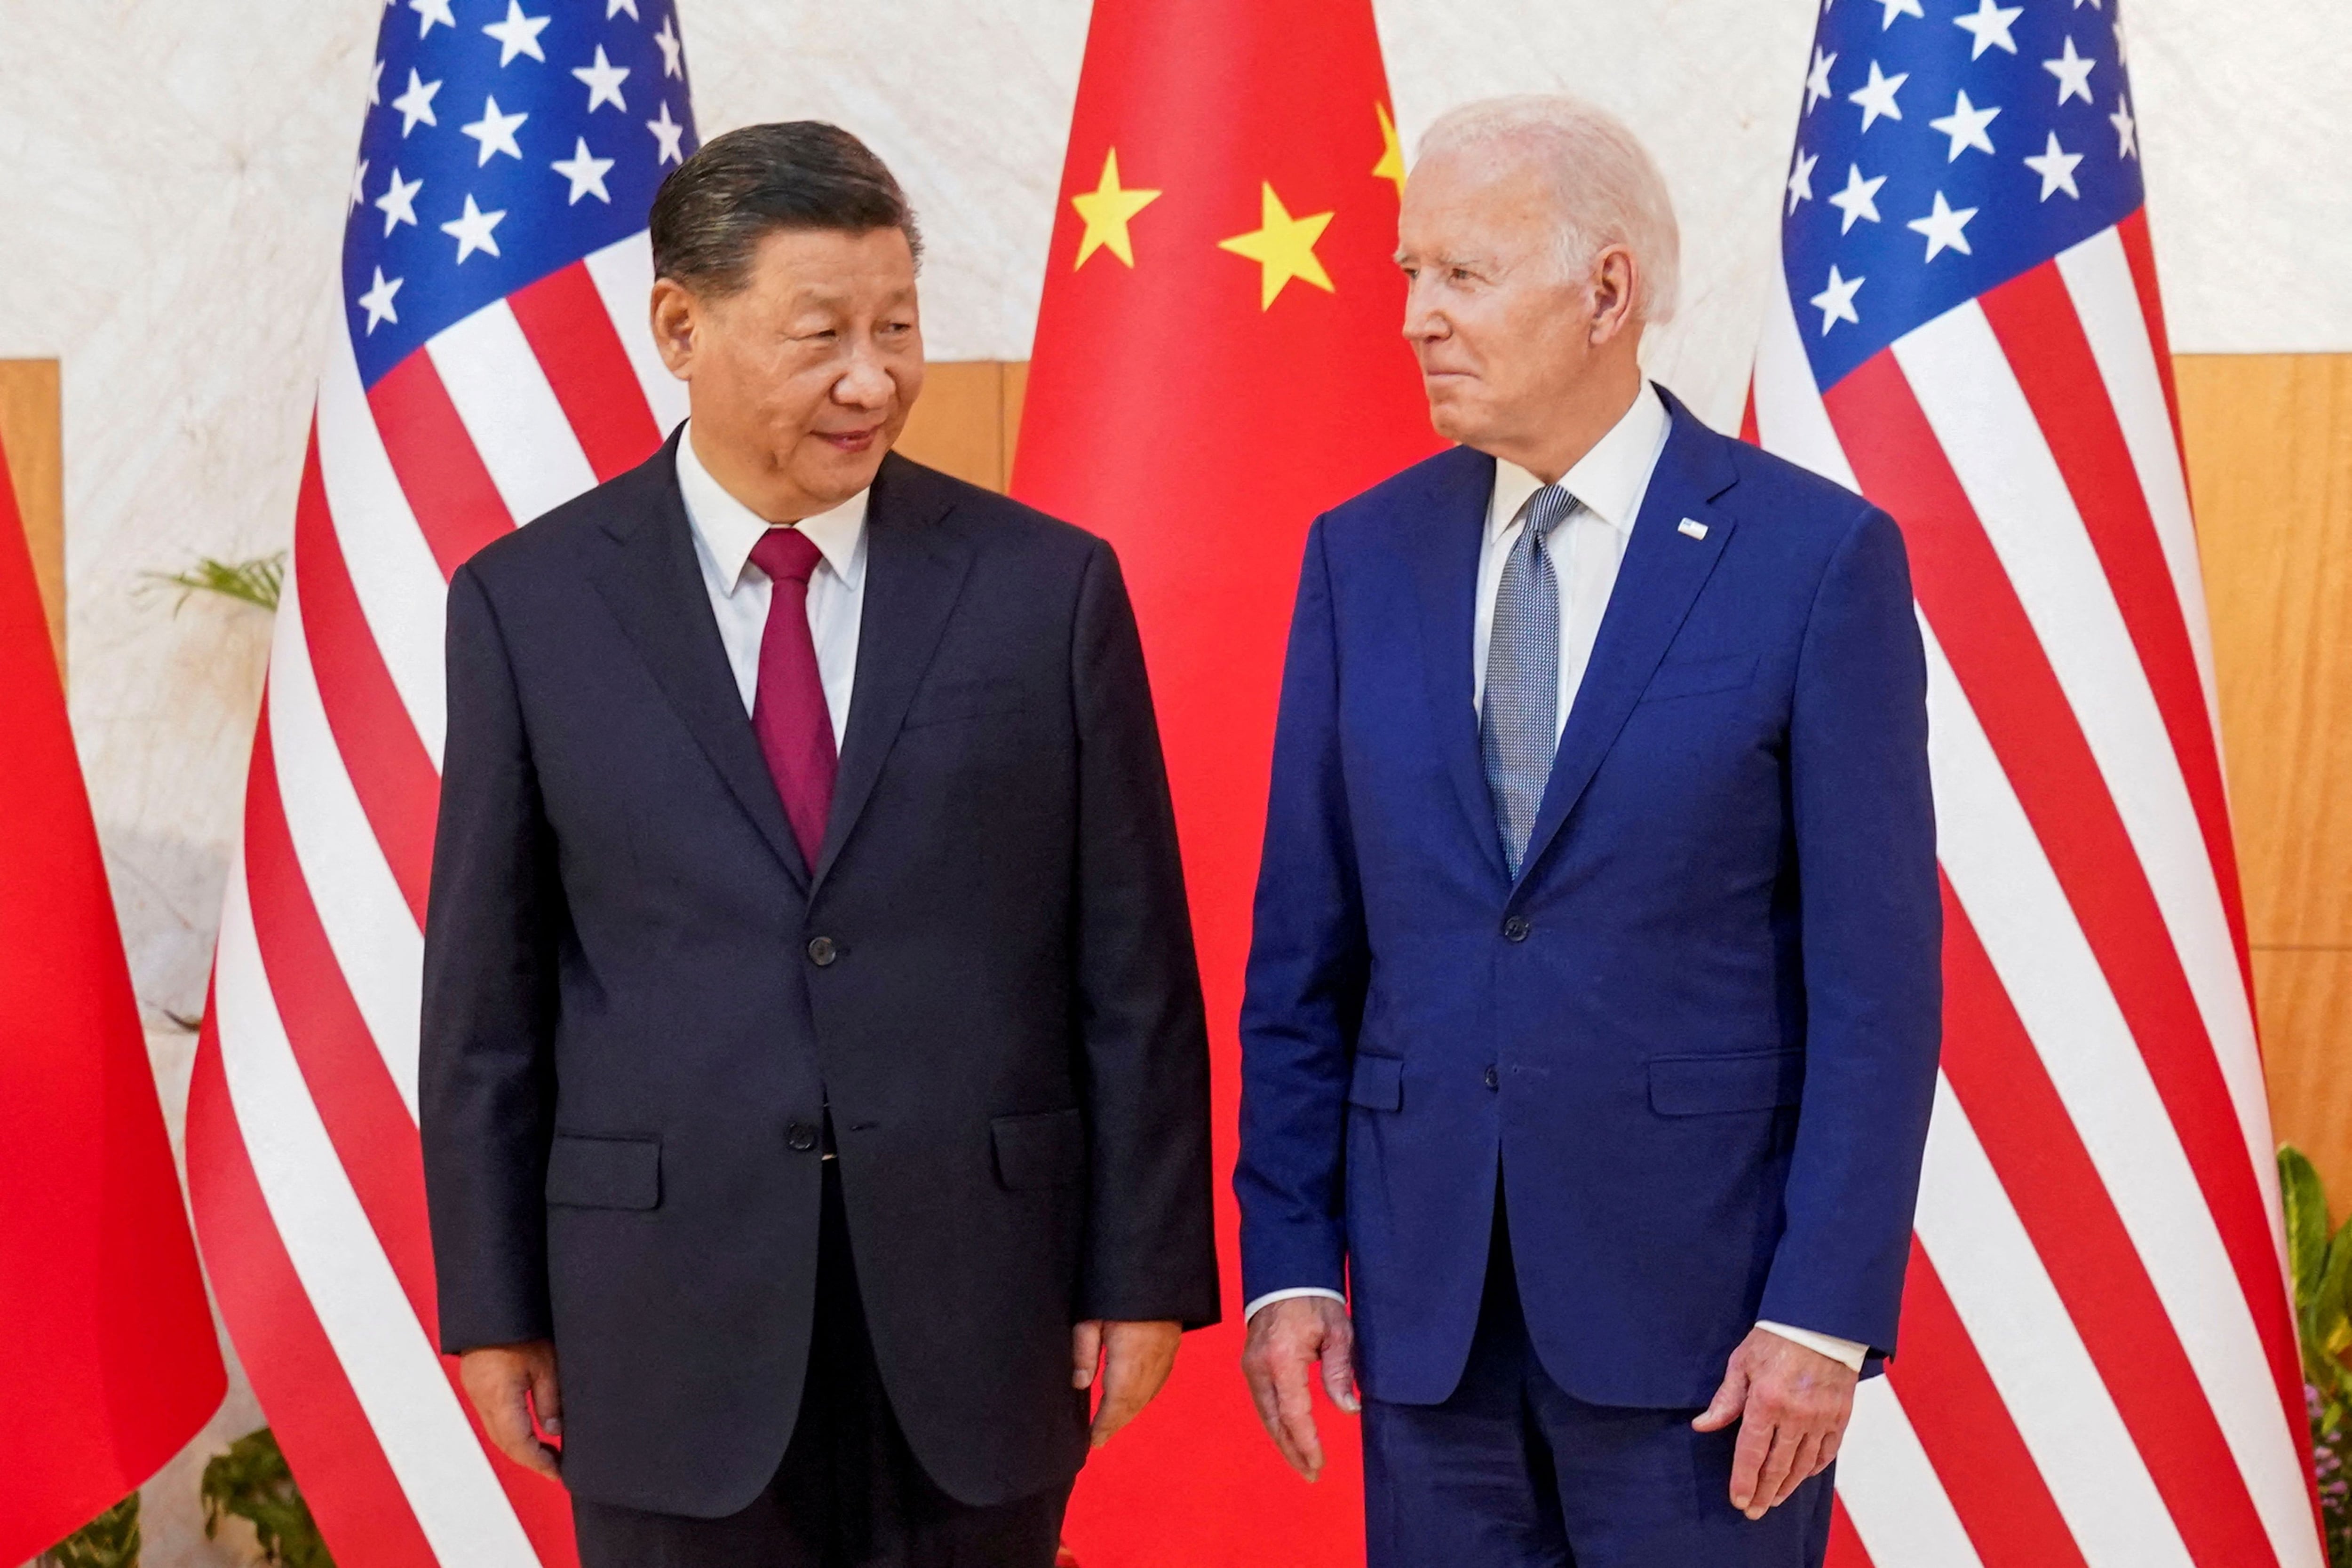 El gobierno de Biden busca rebajar las tensiones con China (REUTERS/Kevin Lamarque)